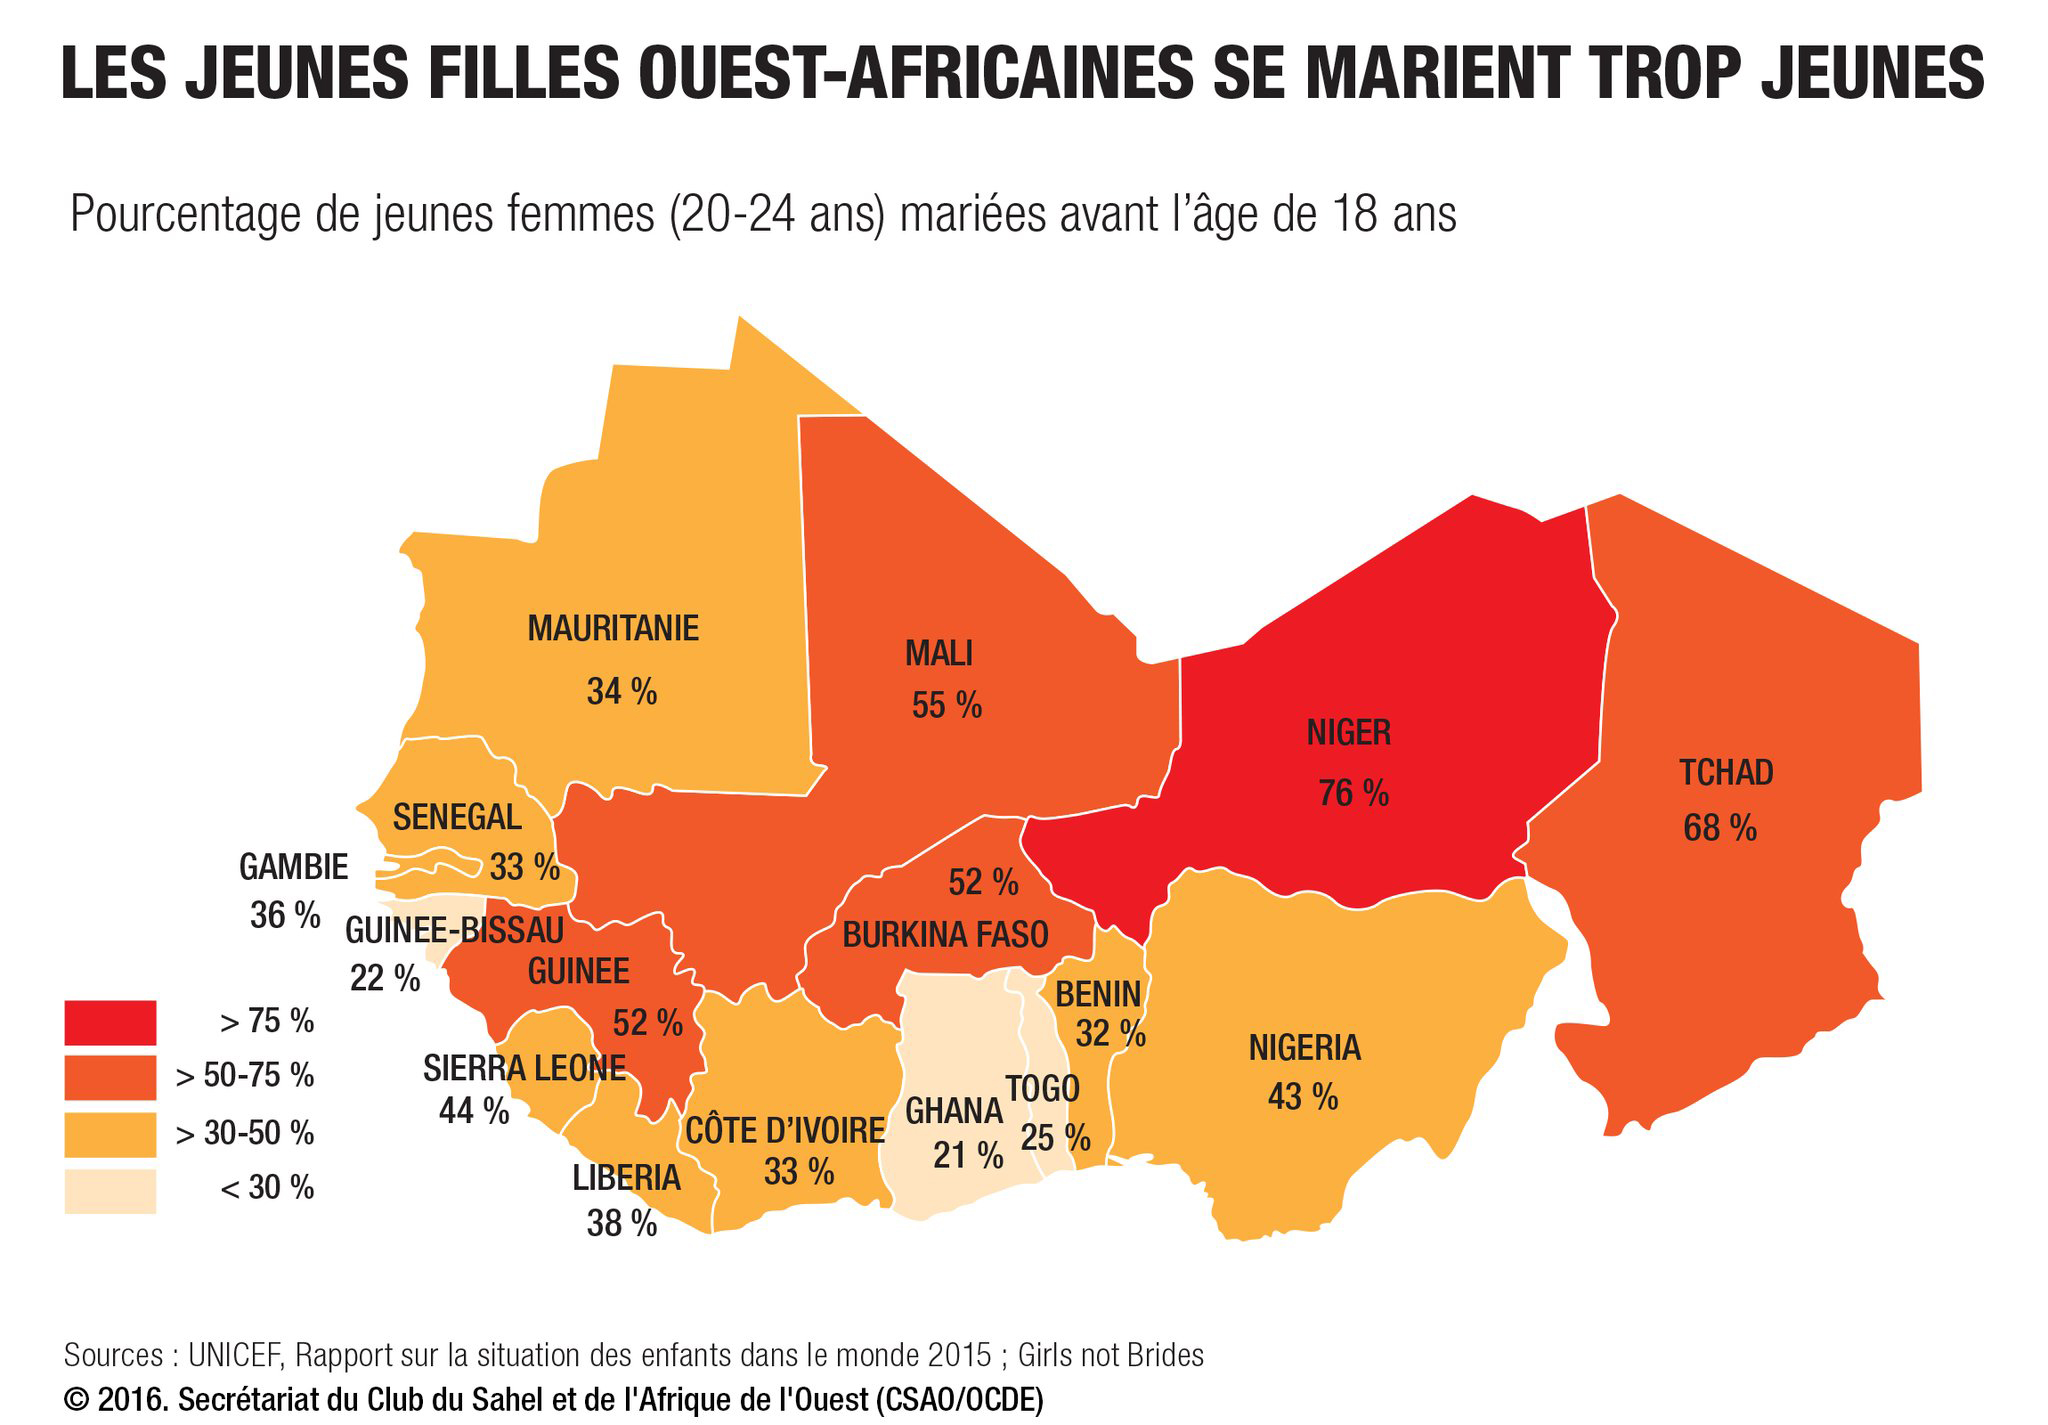 Le mariage précoce au Niger et ses conséquences